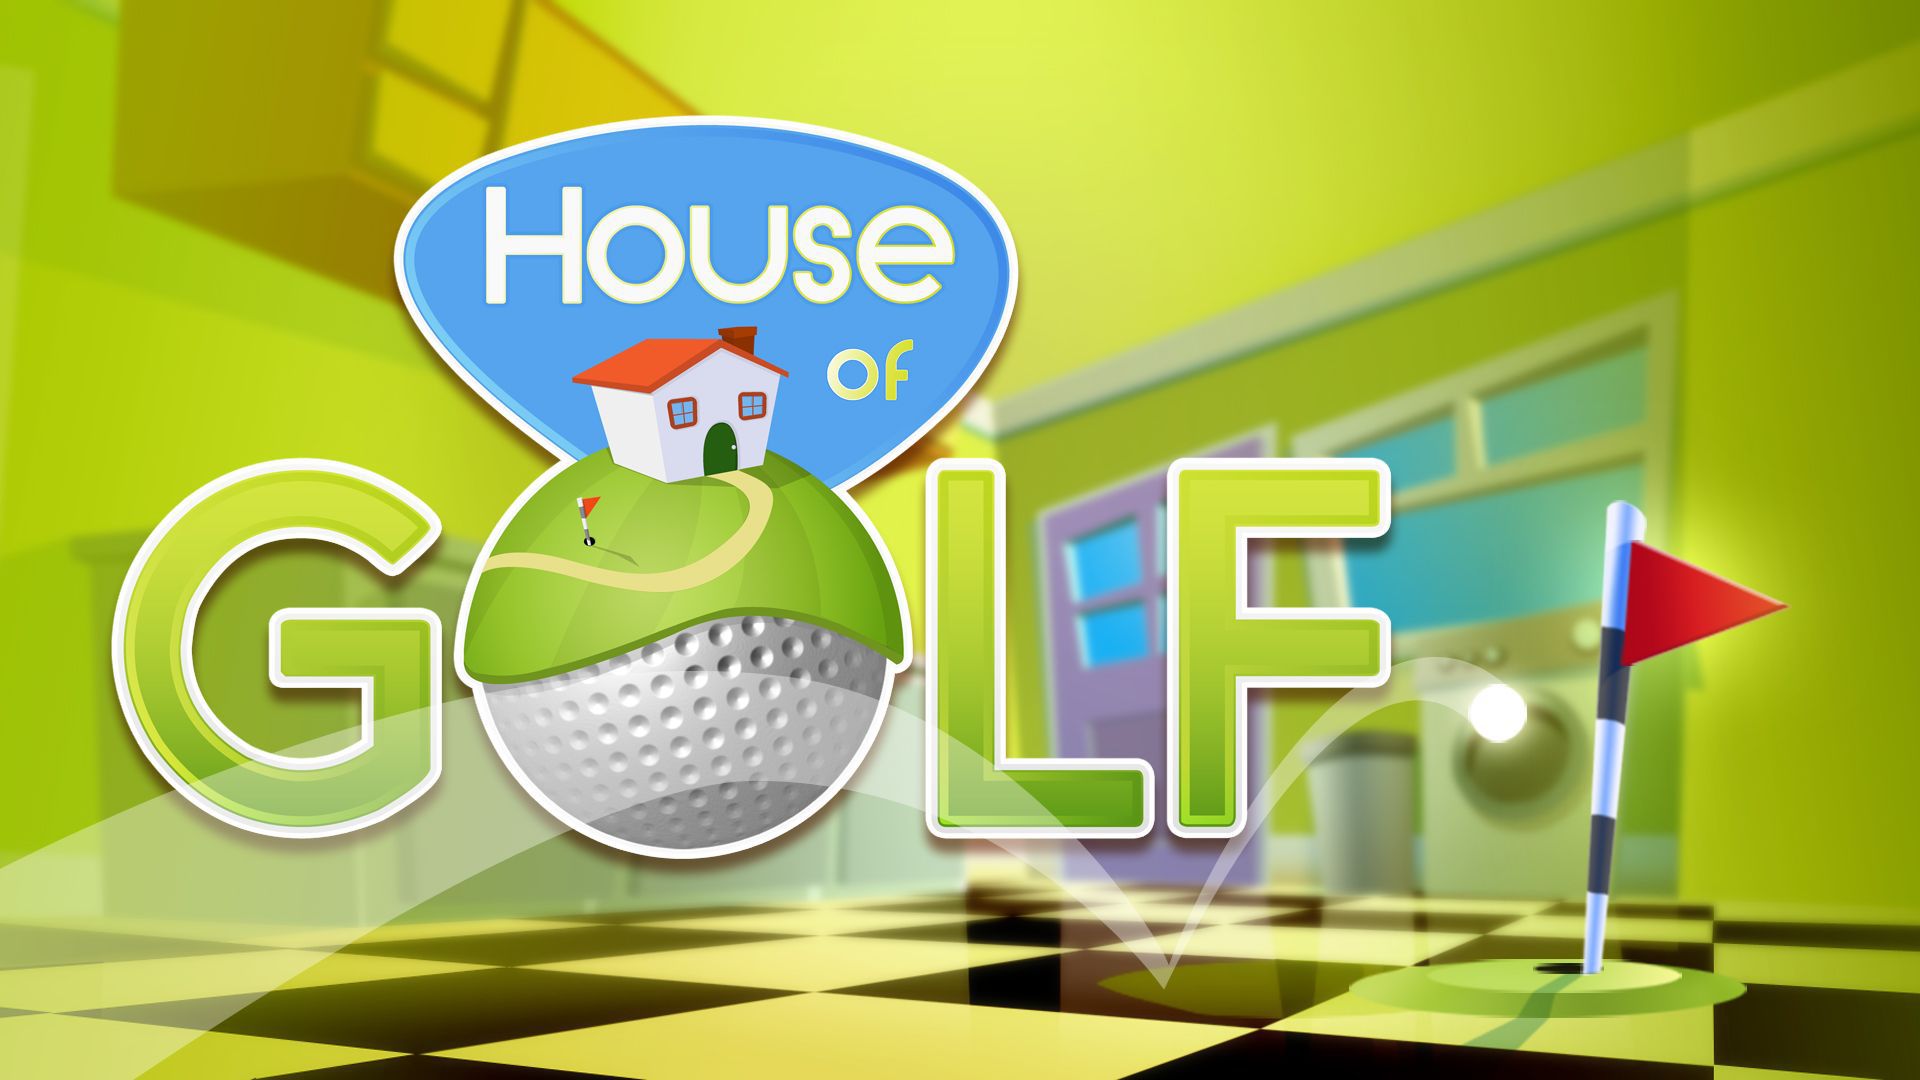 House of Golf Principal